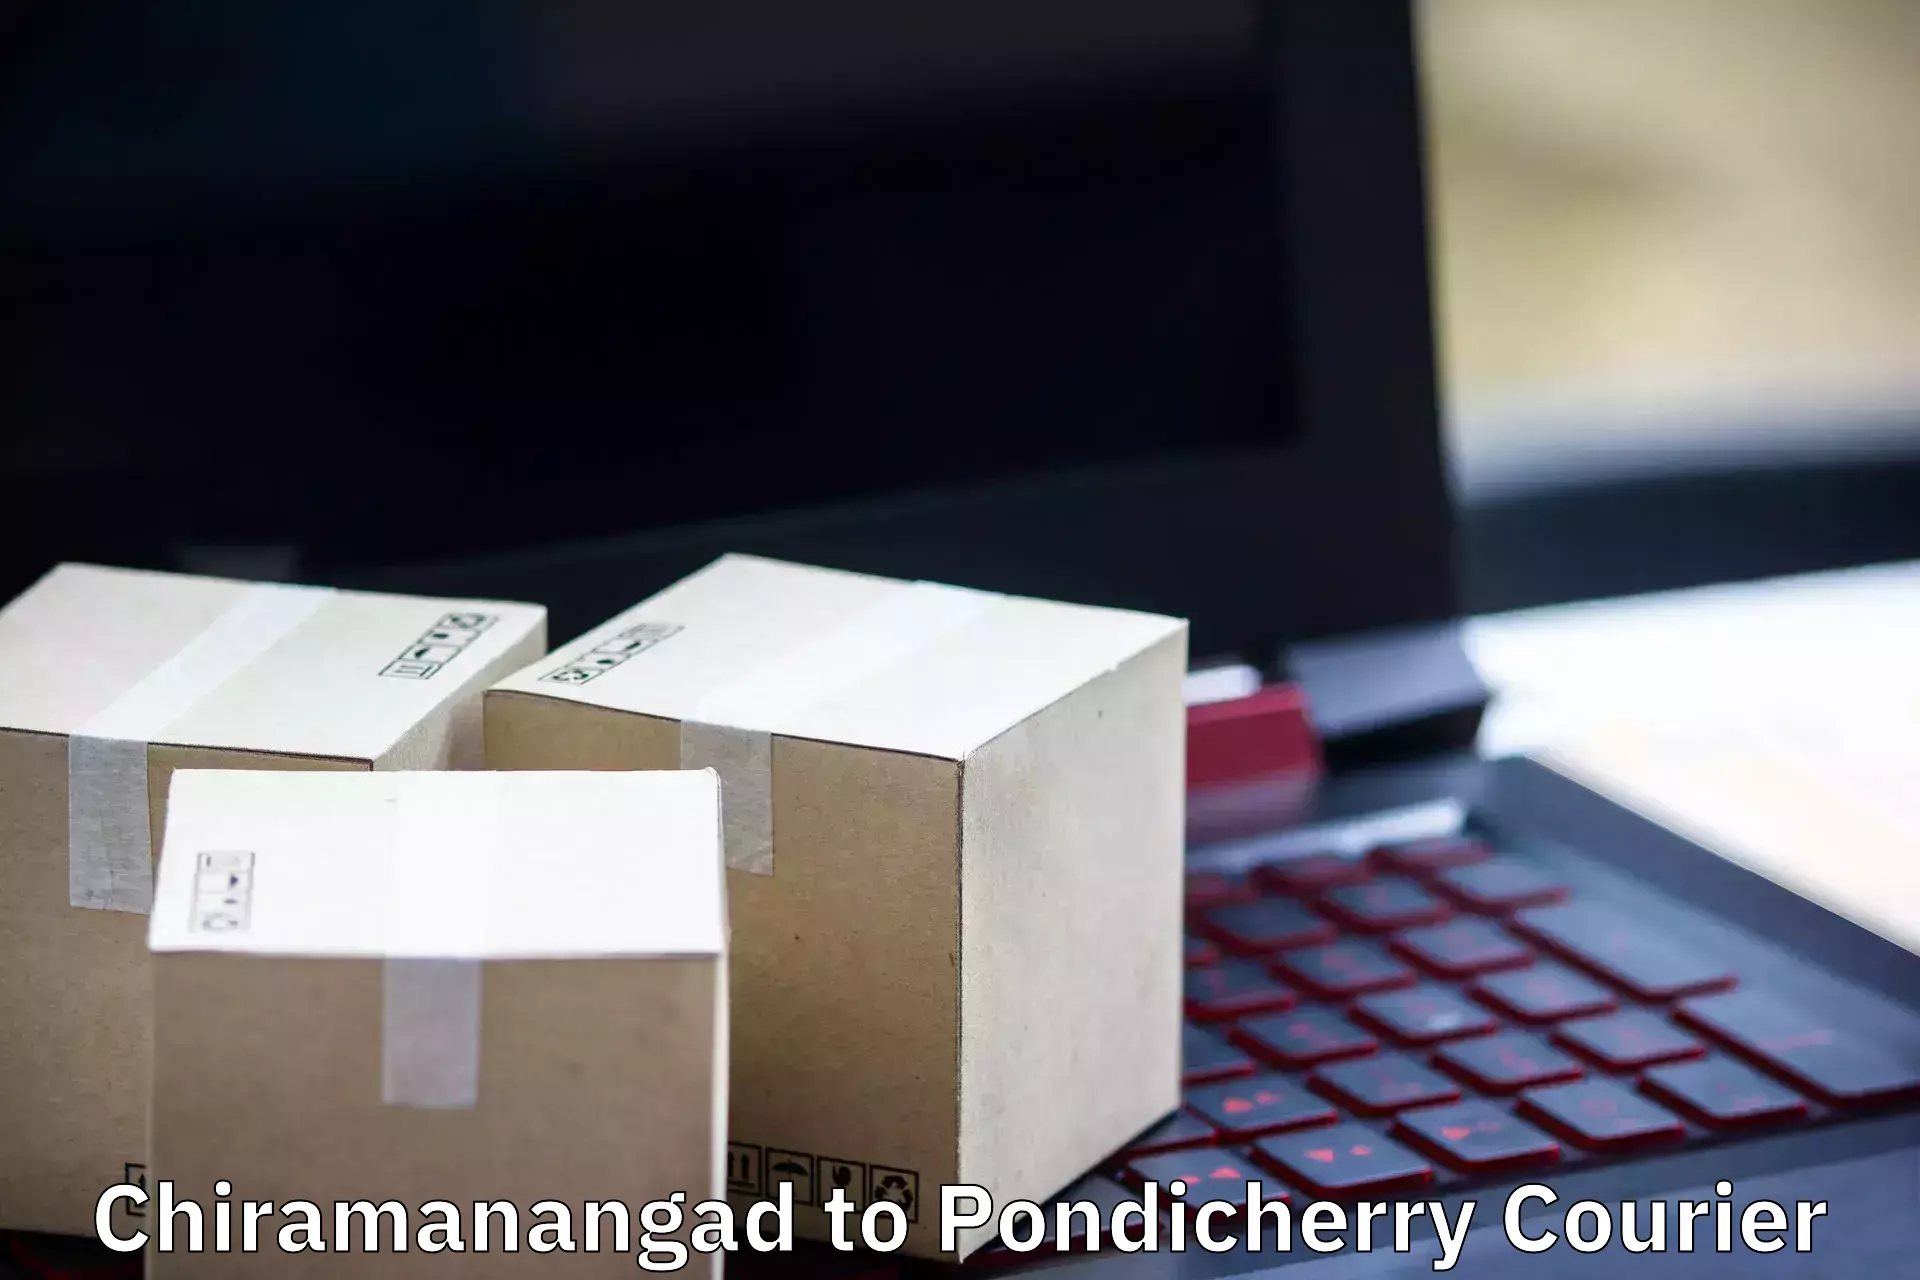 Furniture moving experts Chiramanangad to Pondicherry University